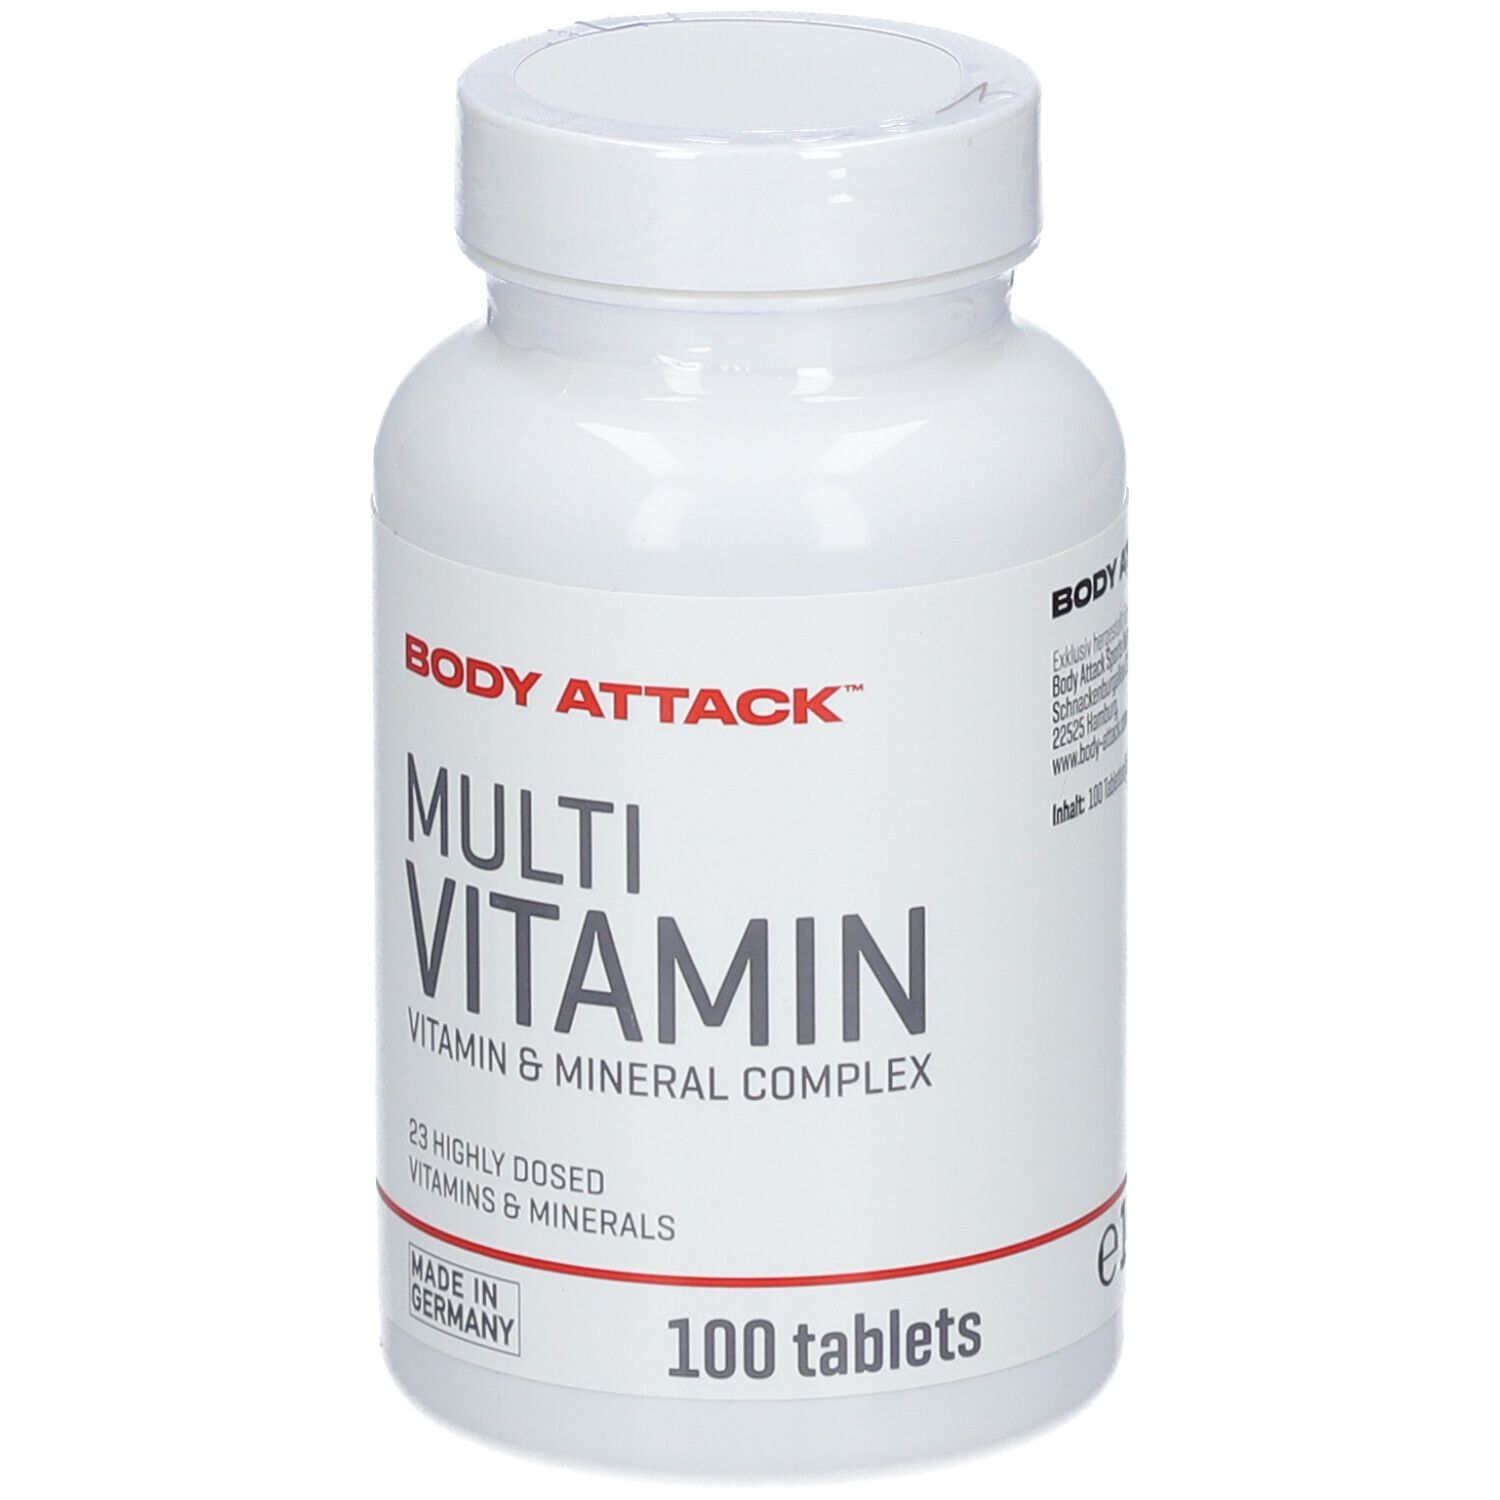 Body Attack Multi Vitamin